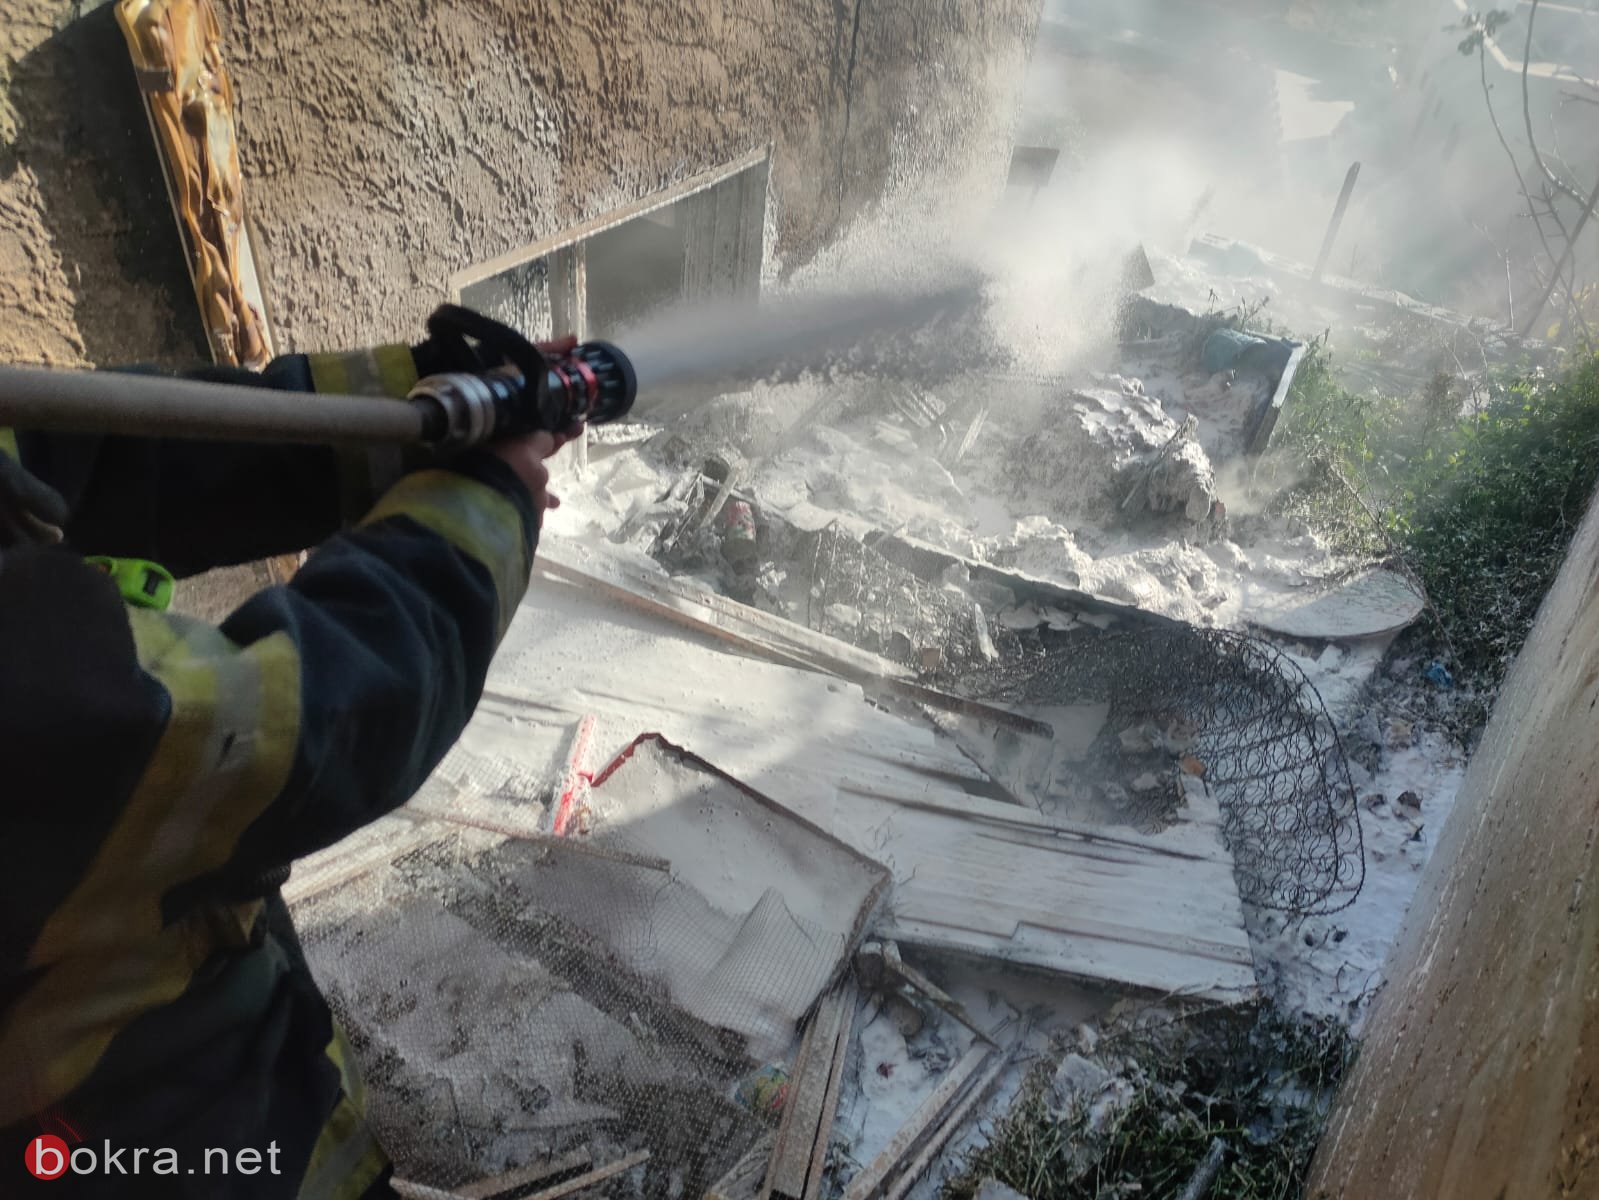 عسفيا: اندلاع حريق في أكوام نفايات يشكل خطرا على منازل-1